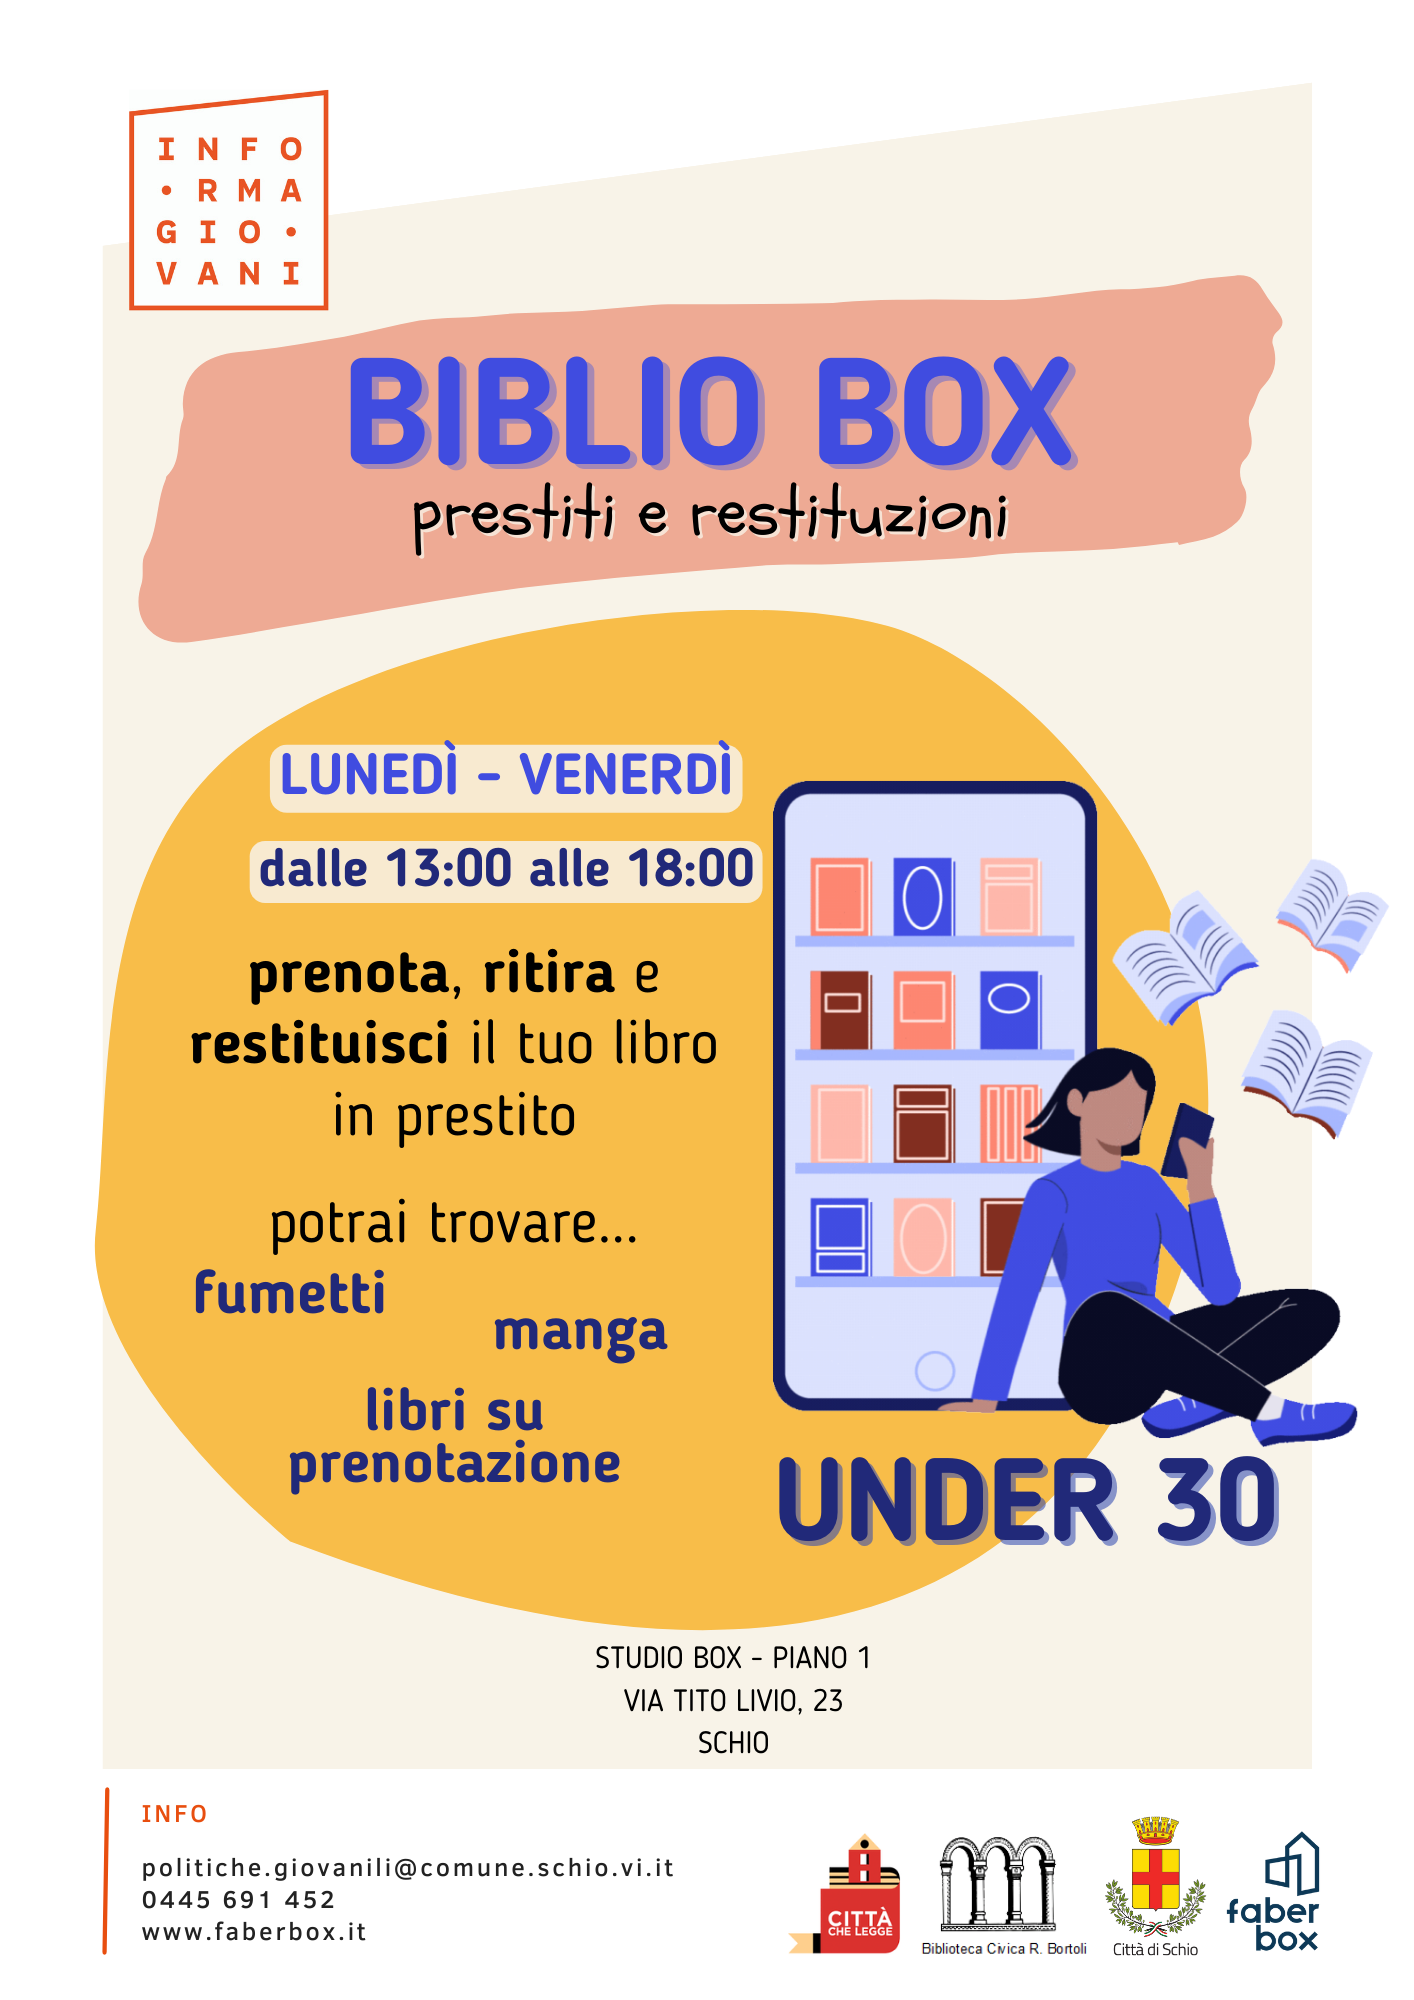 NOVITA’ AL FABER BOX: E’ IN ARRIVO LA BIBLIO BOX!